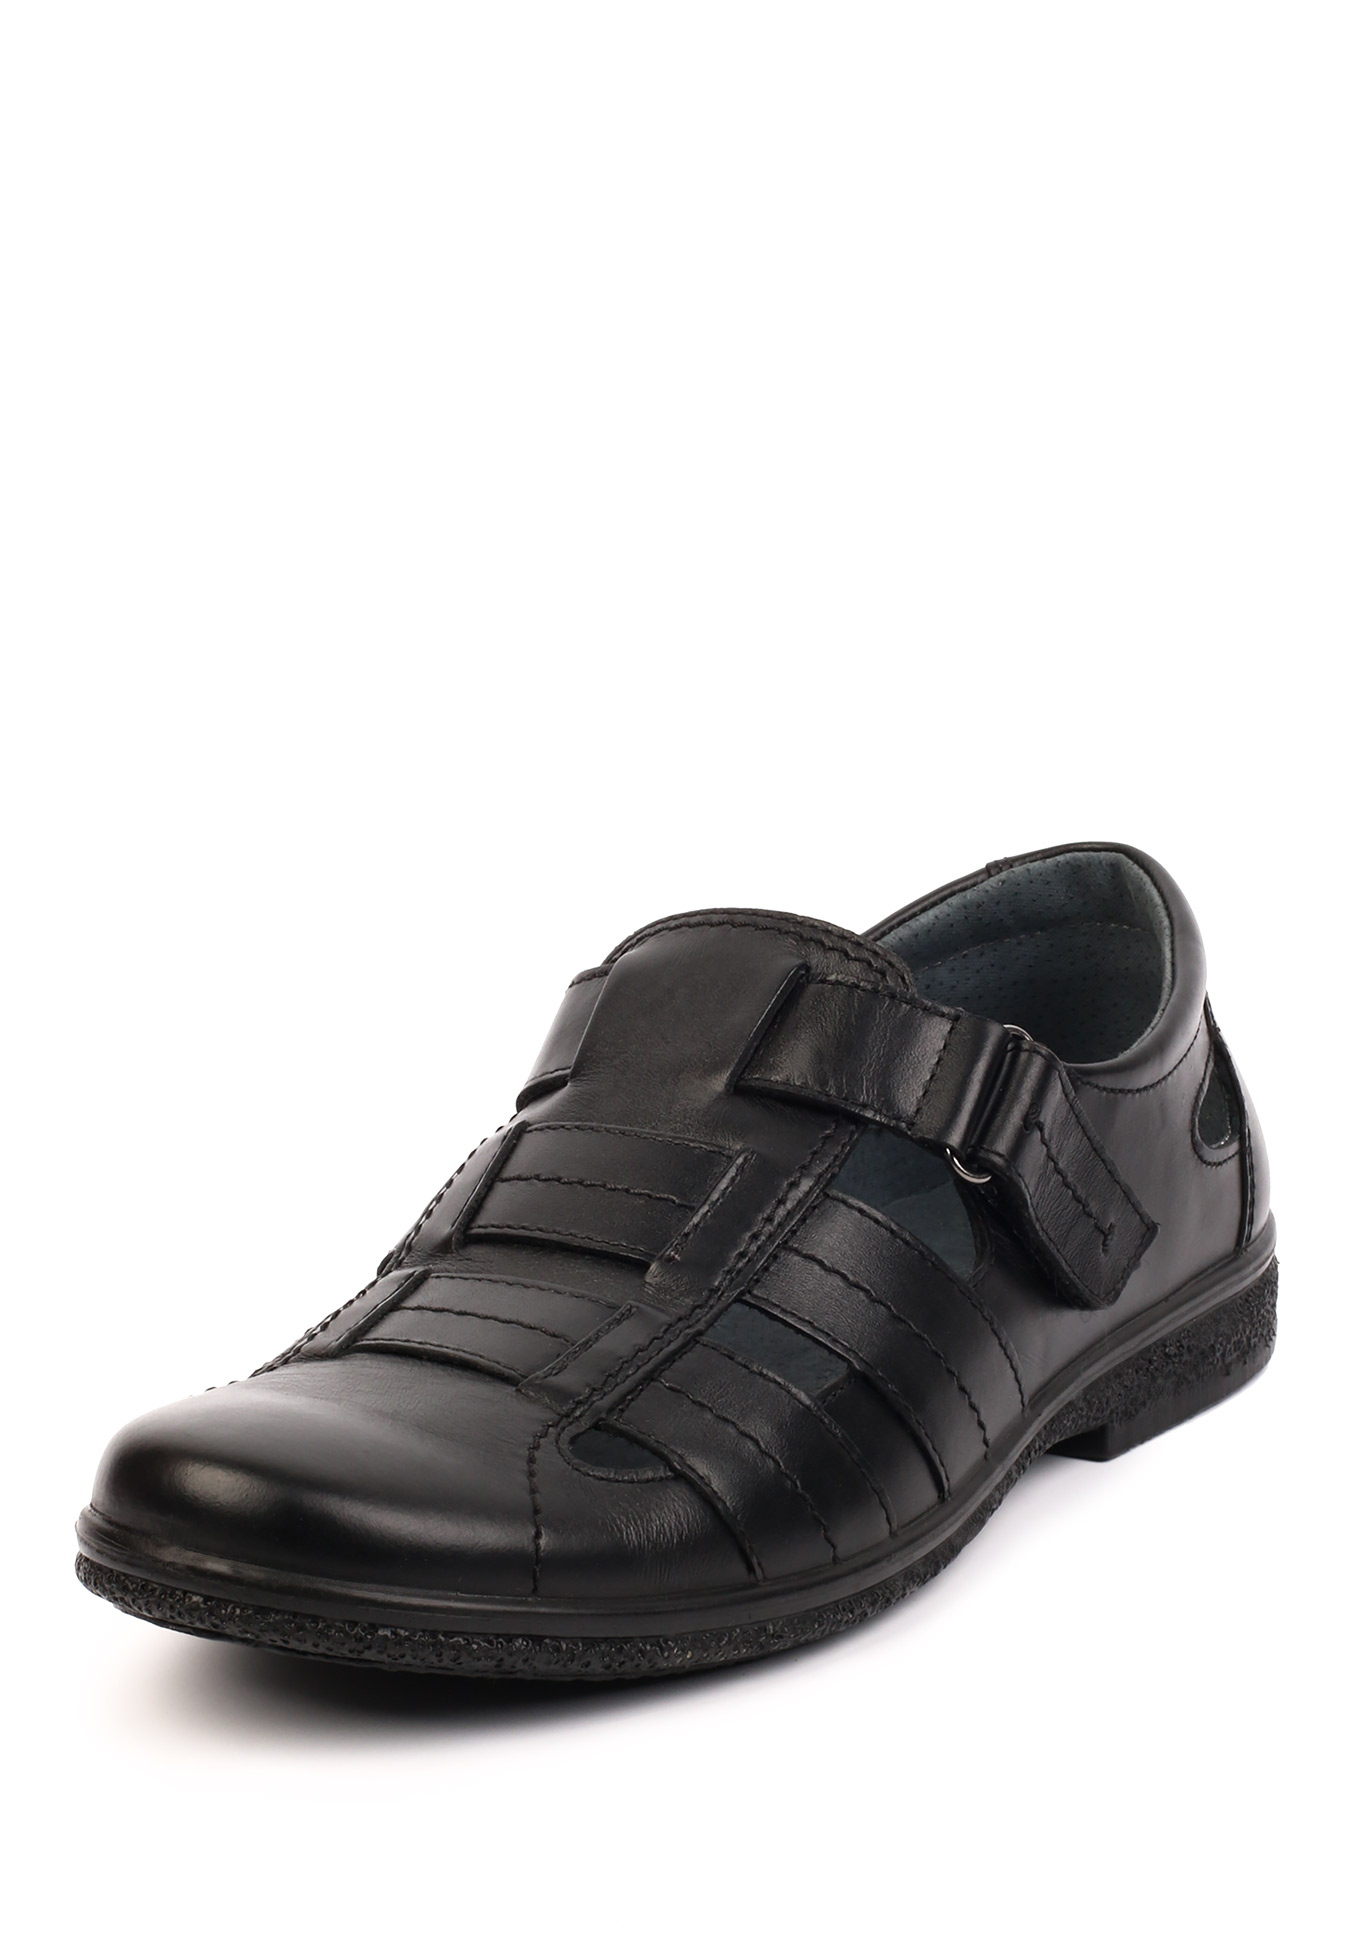 Туфли летние мужские "Кемерон" Marko, размер 40, цвет темно-бежевый - фото 2